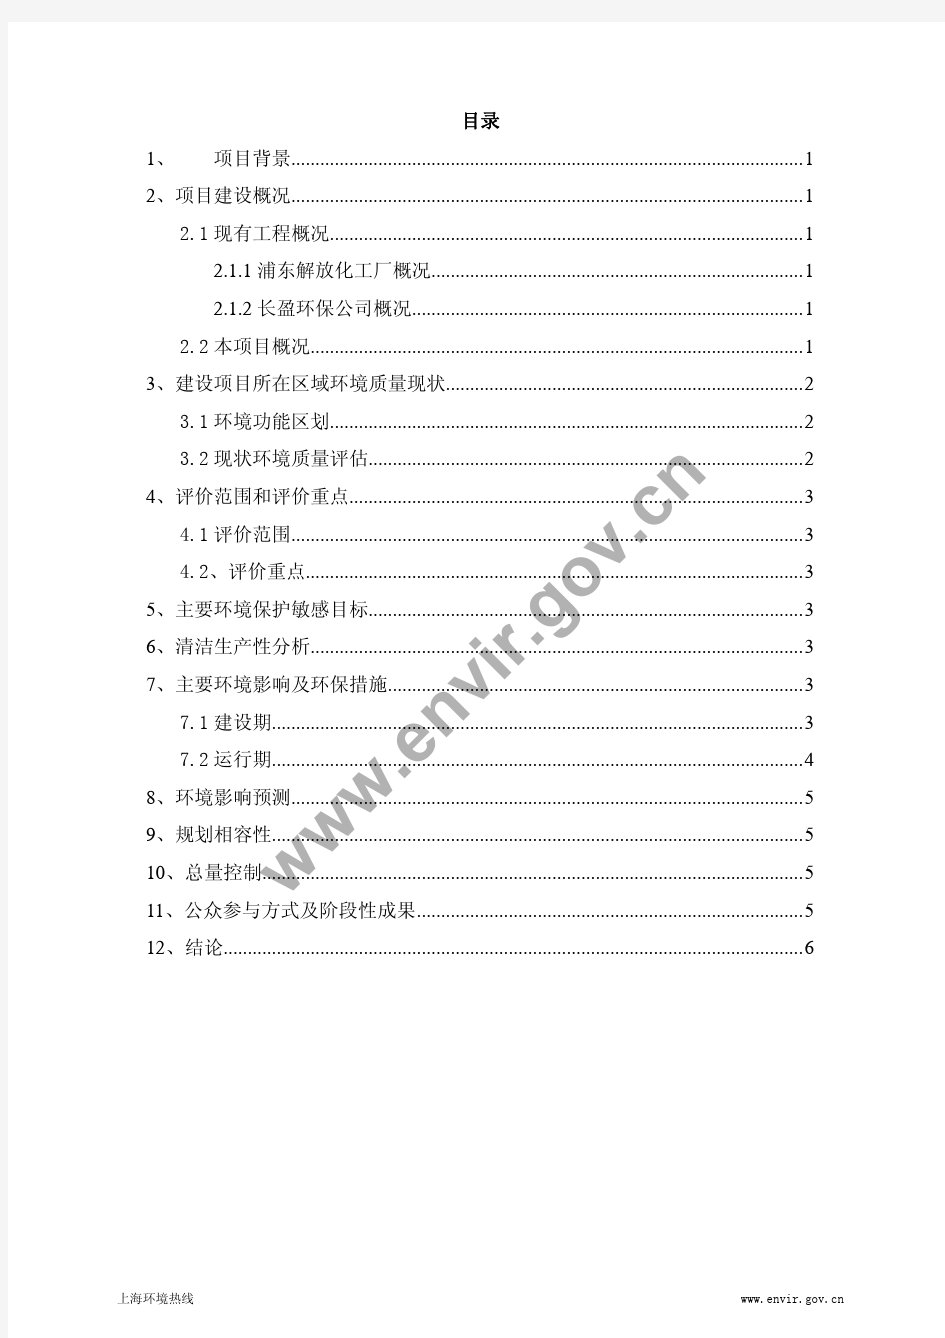 上海长盈环保服务有限公司二期工程 环境影响报告书(简本)